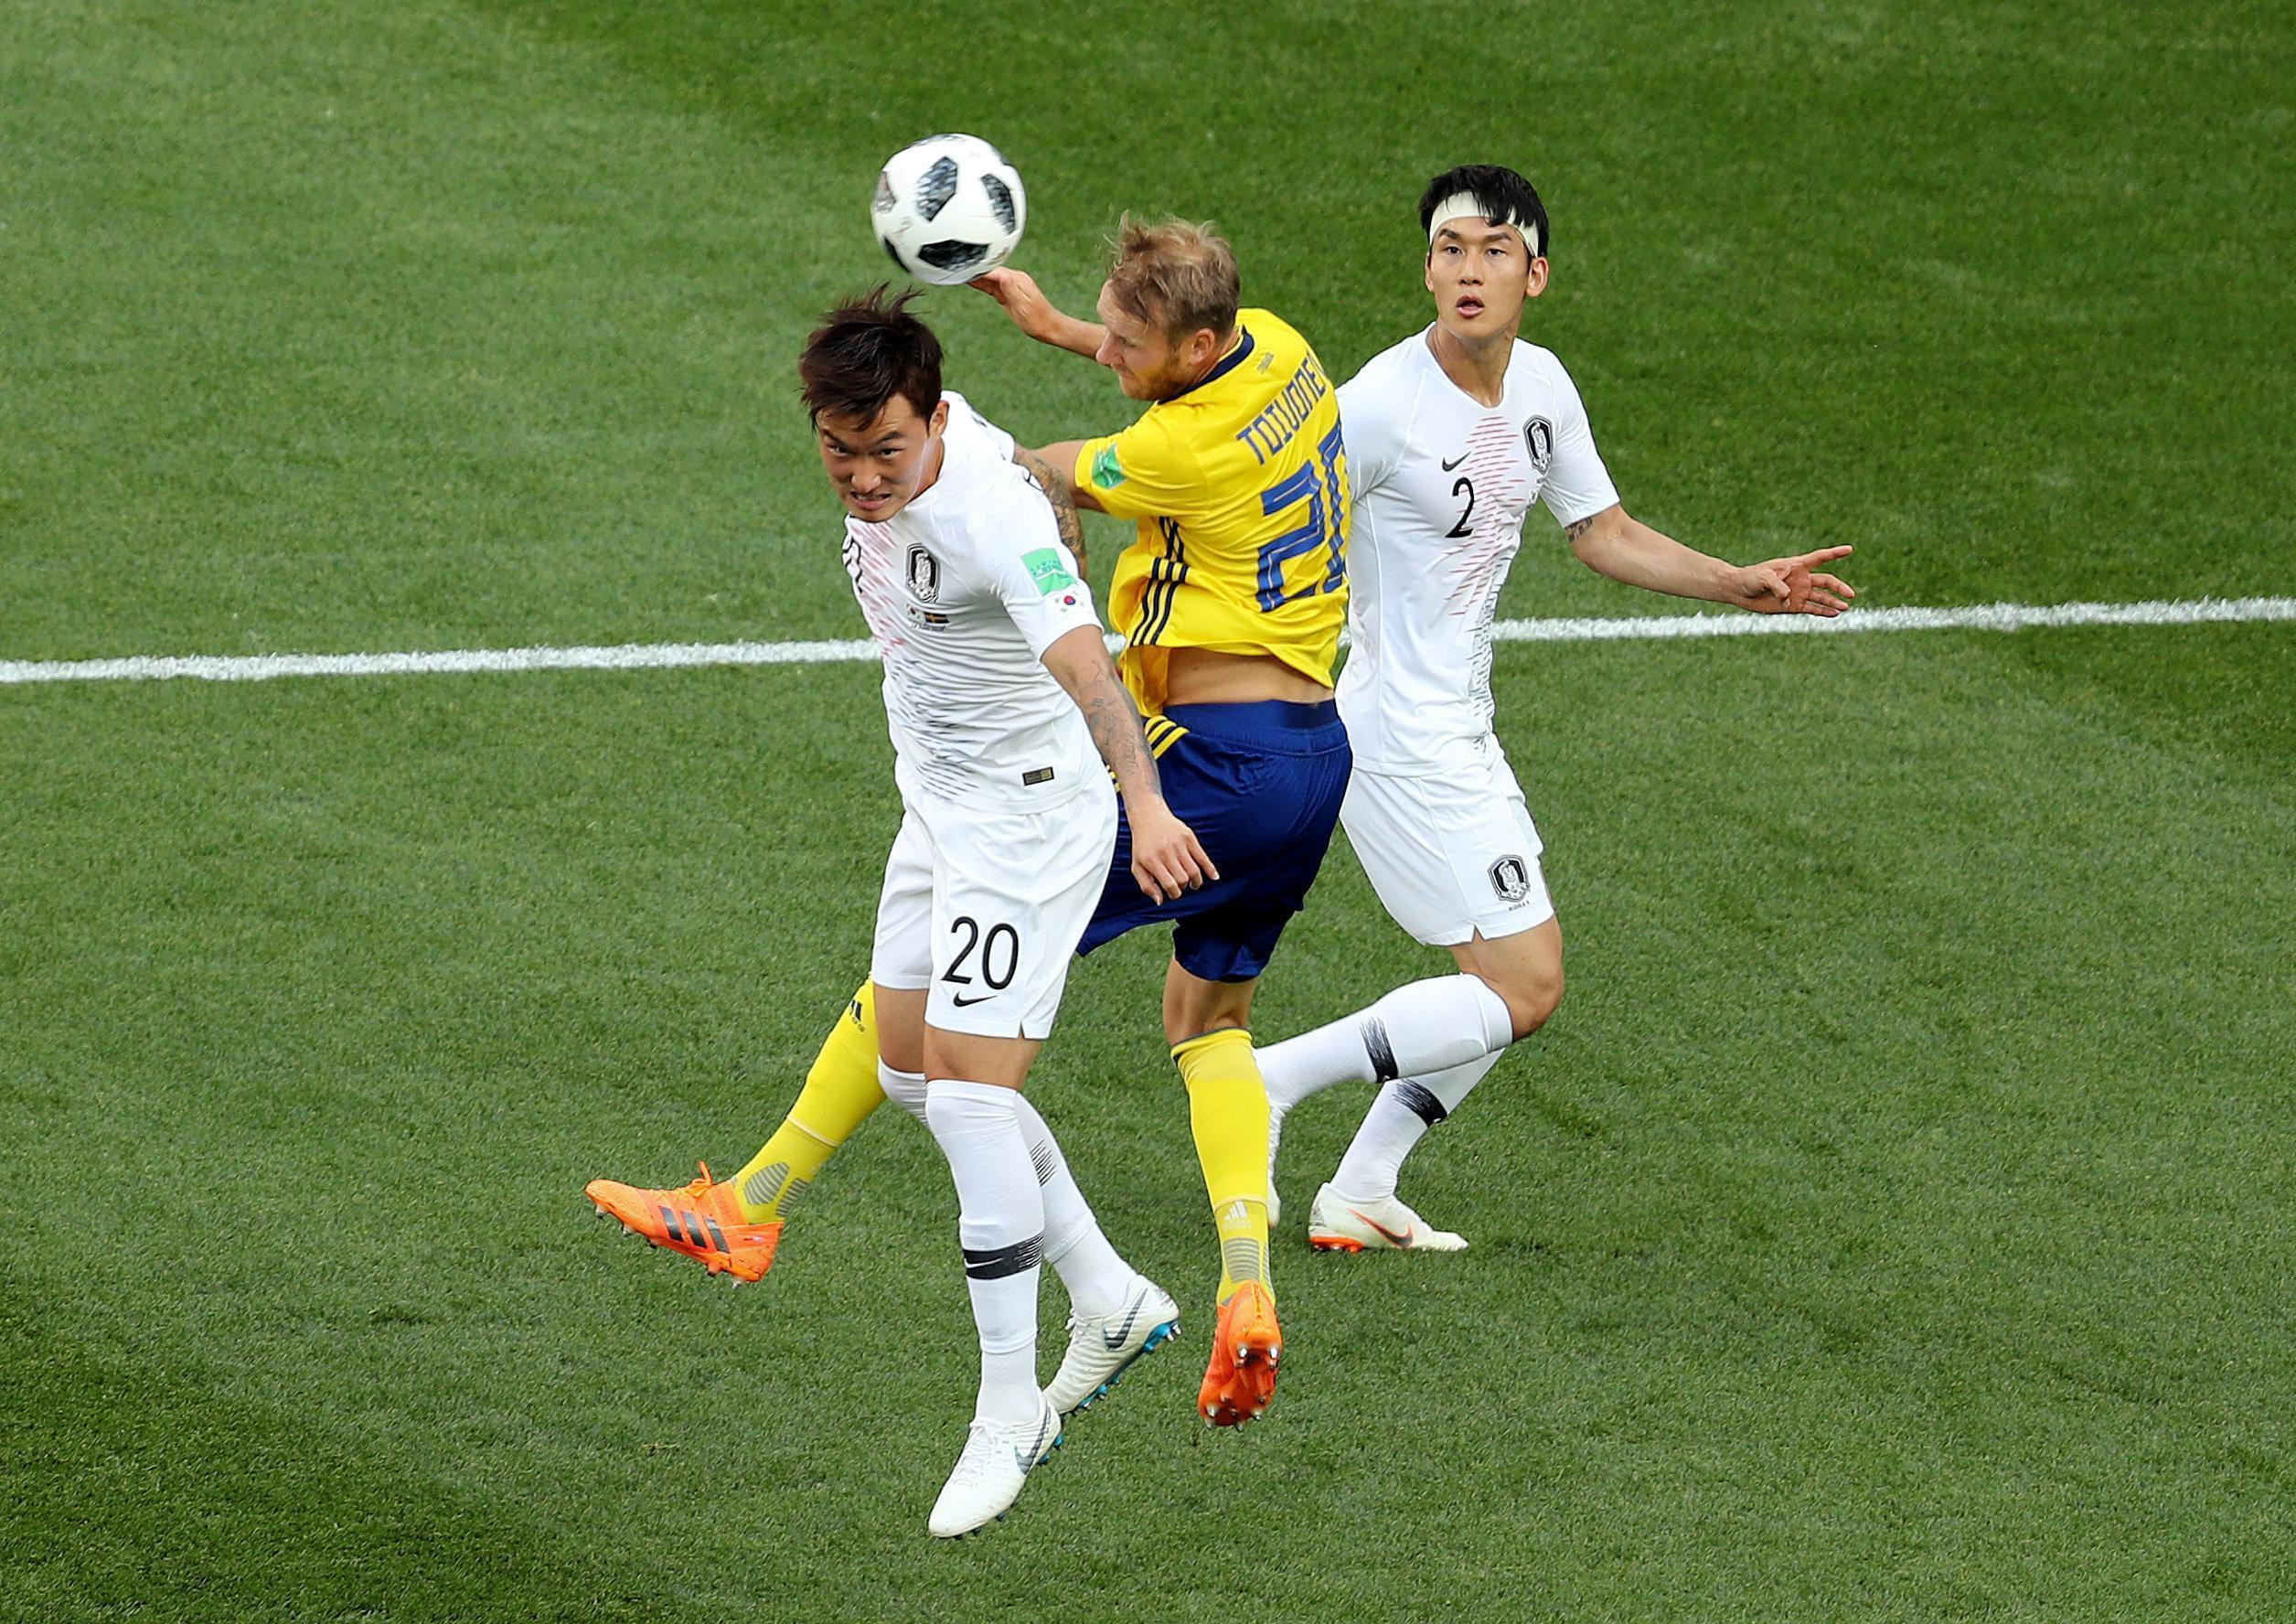 İsveç - Güney Kore maçının özeti